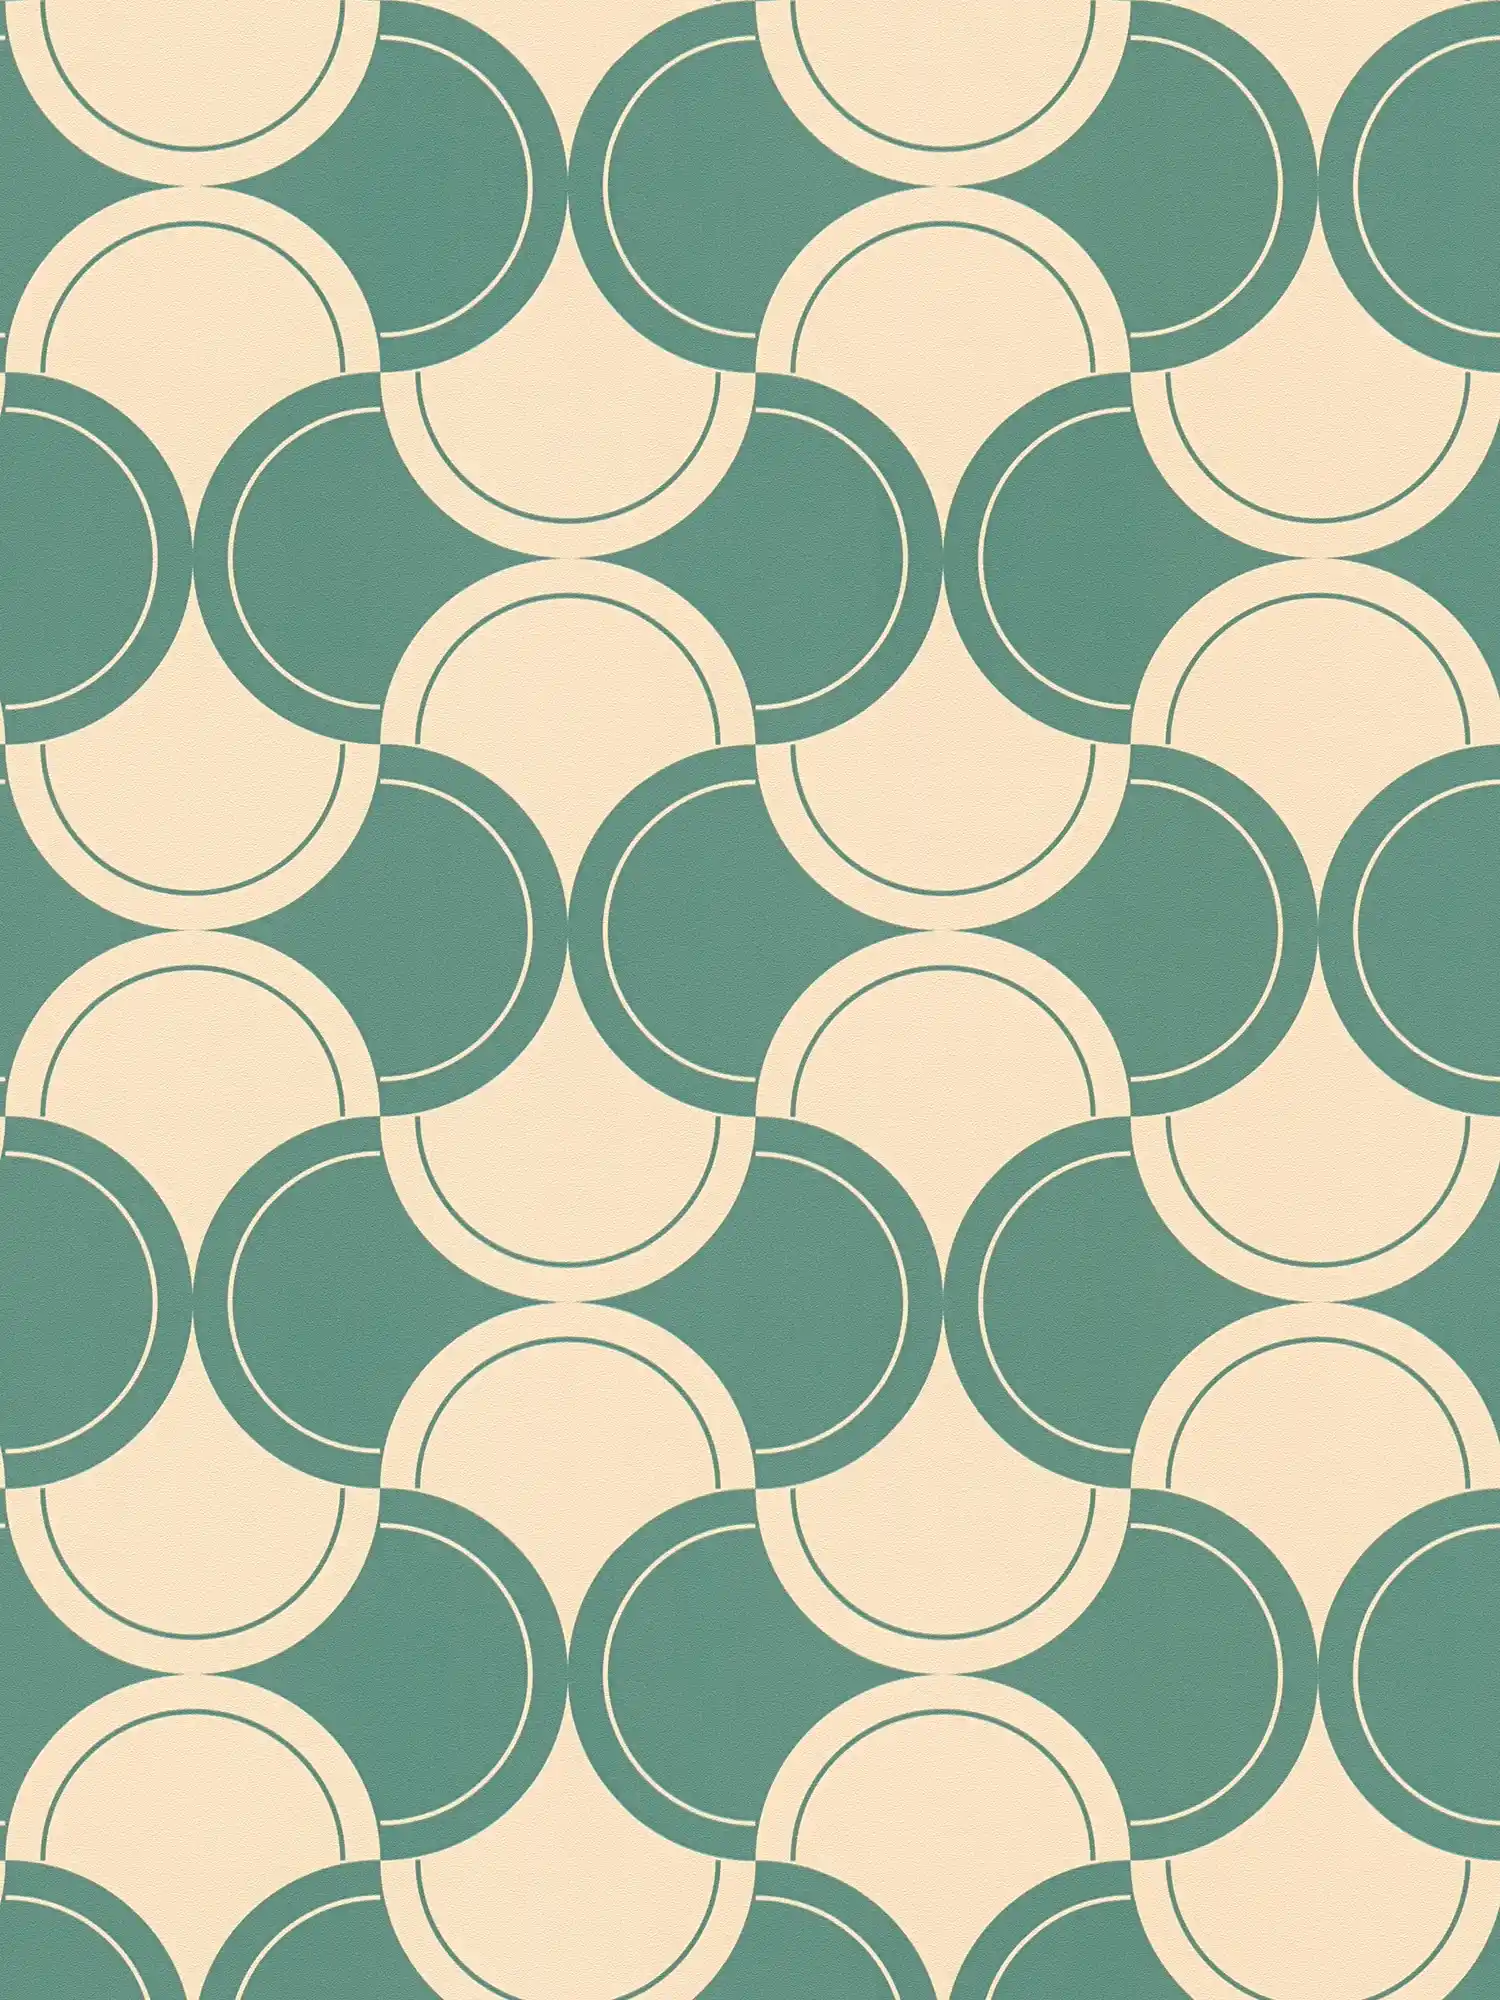         Vliesbehang met halfcirkelvormig patroon in jaren 70 stijl - groen, beige
    